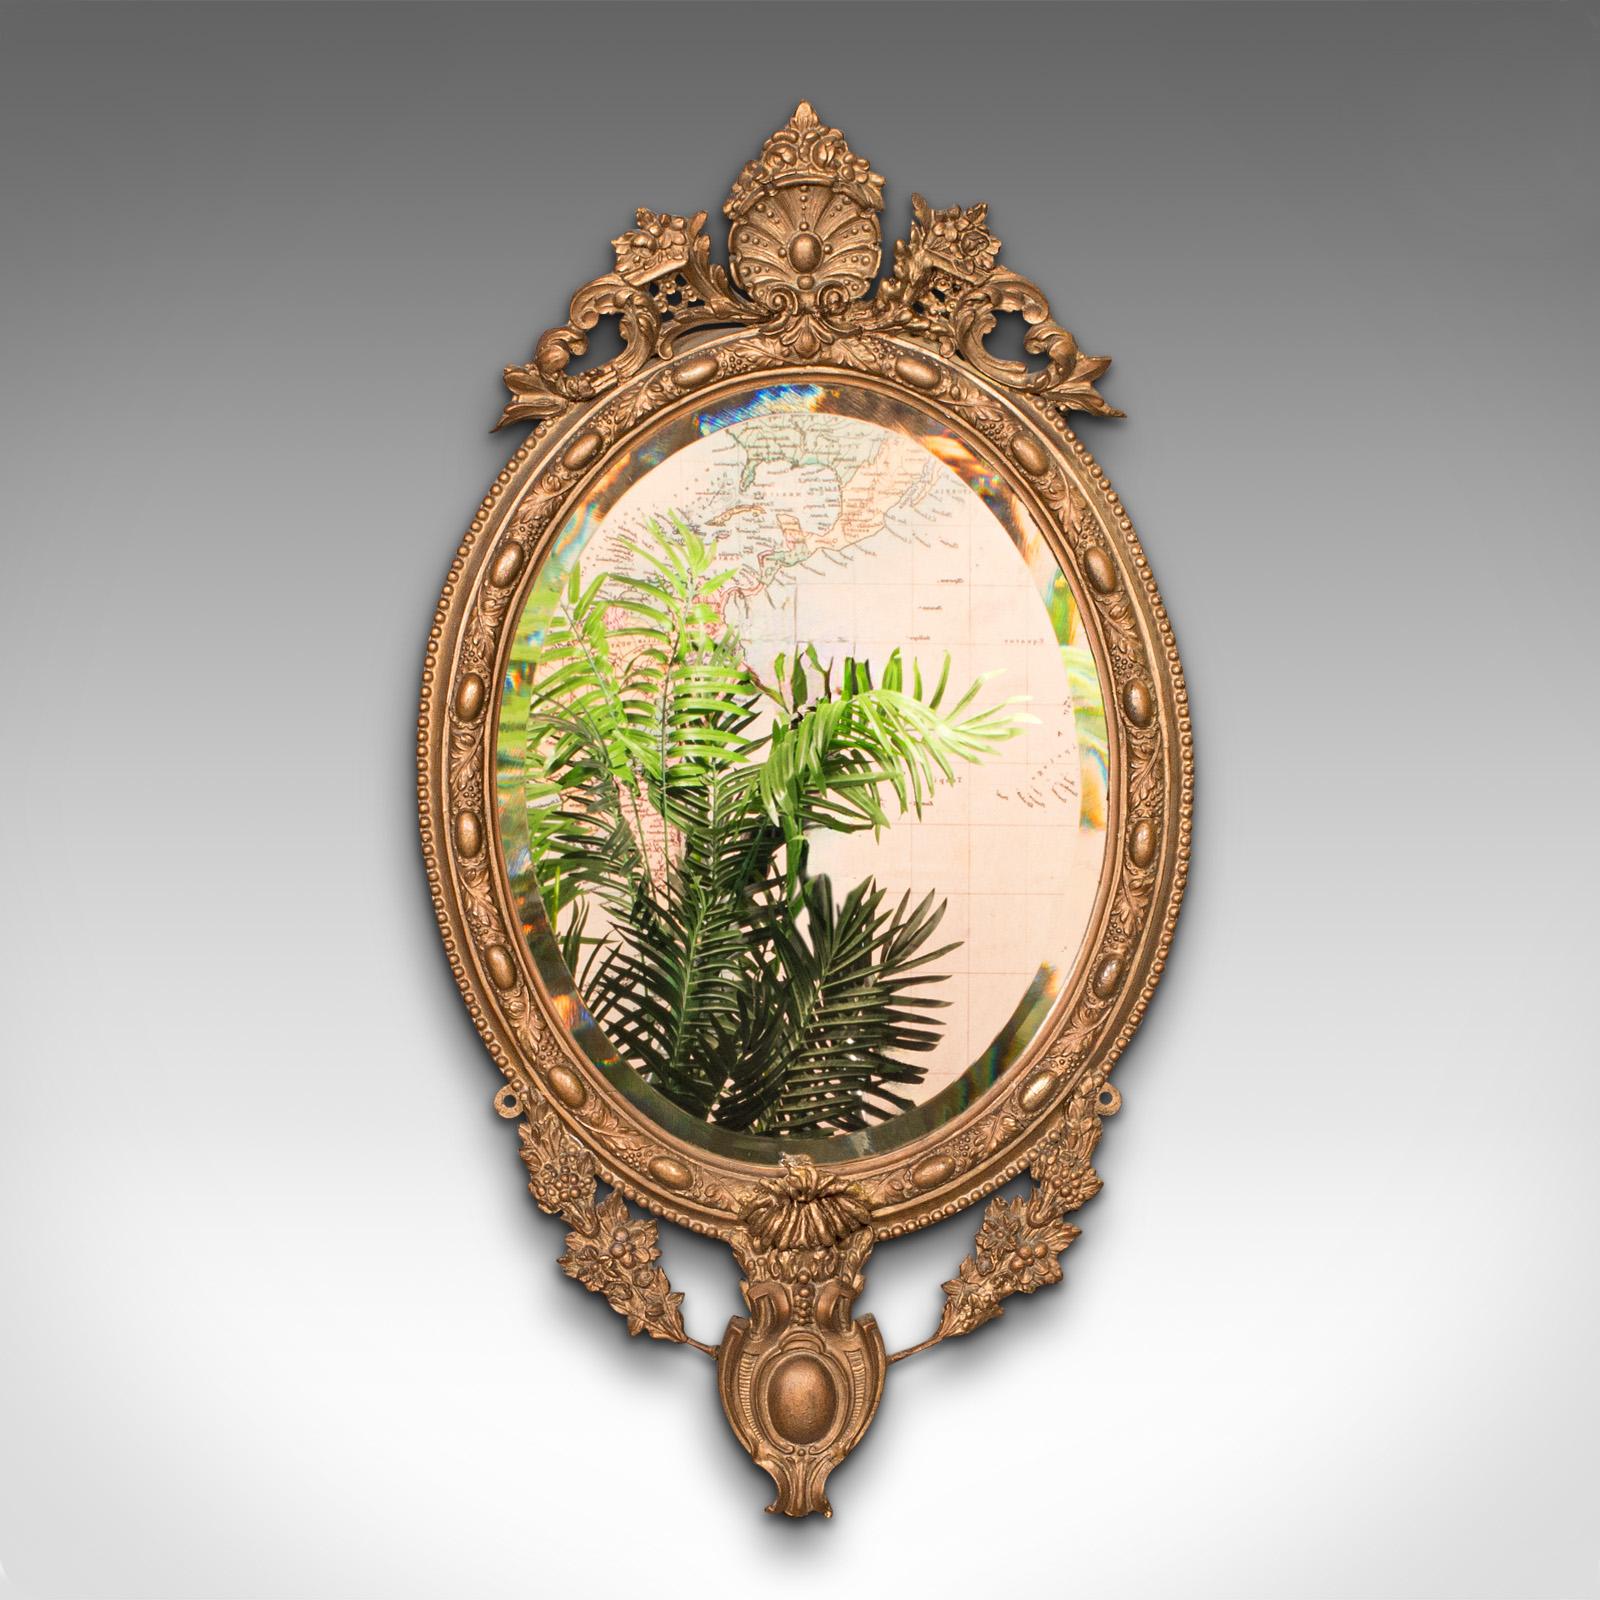 Il s'agit d'un miroir mural ancien et orné. Miroir français en verre biseauté et gesso doré, datant de la fin de la période victorienne, vers 1900.

Miroir mural pimpant à l'élégance continentale ornée.
Présente une patine d'ancienneté souhaitable